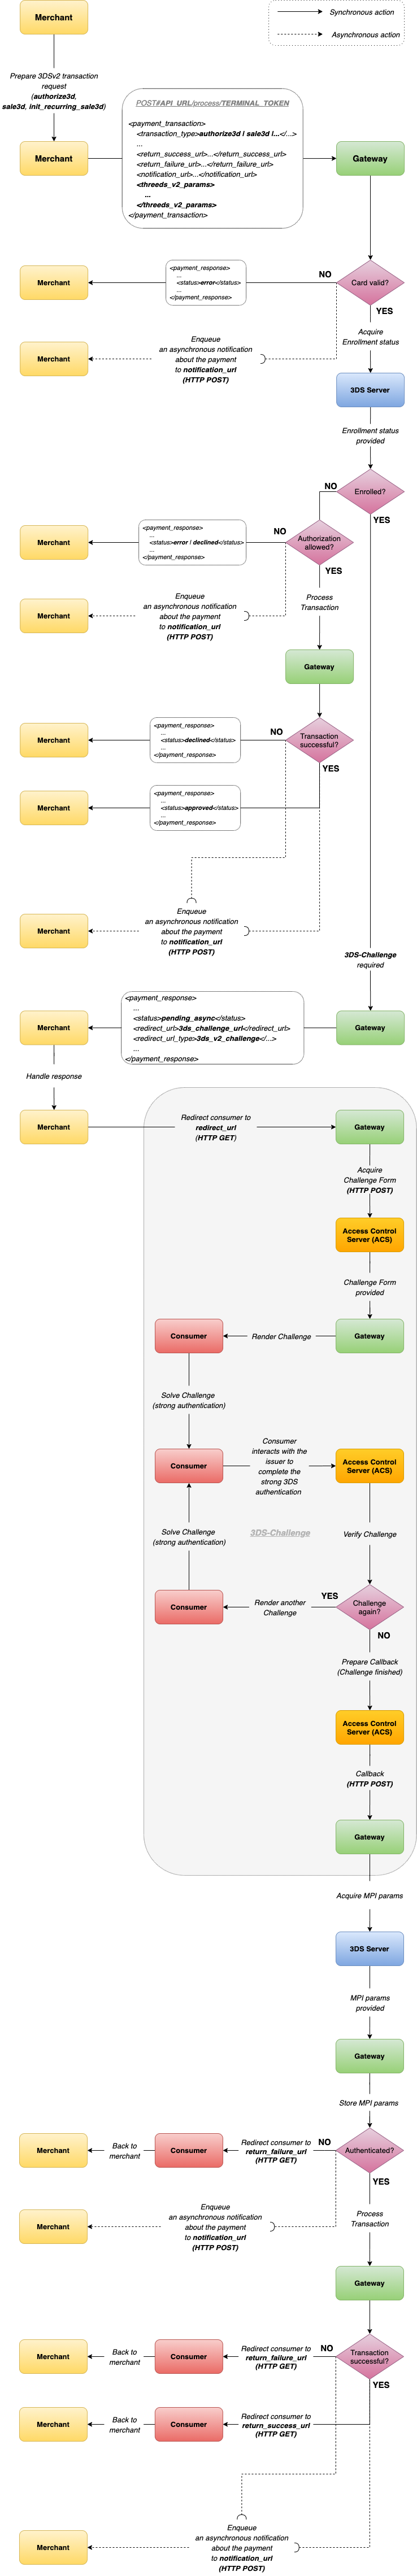 3DSv2 authentication flow diagram